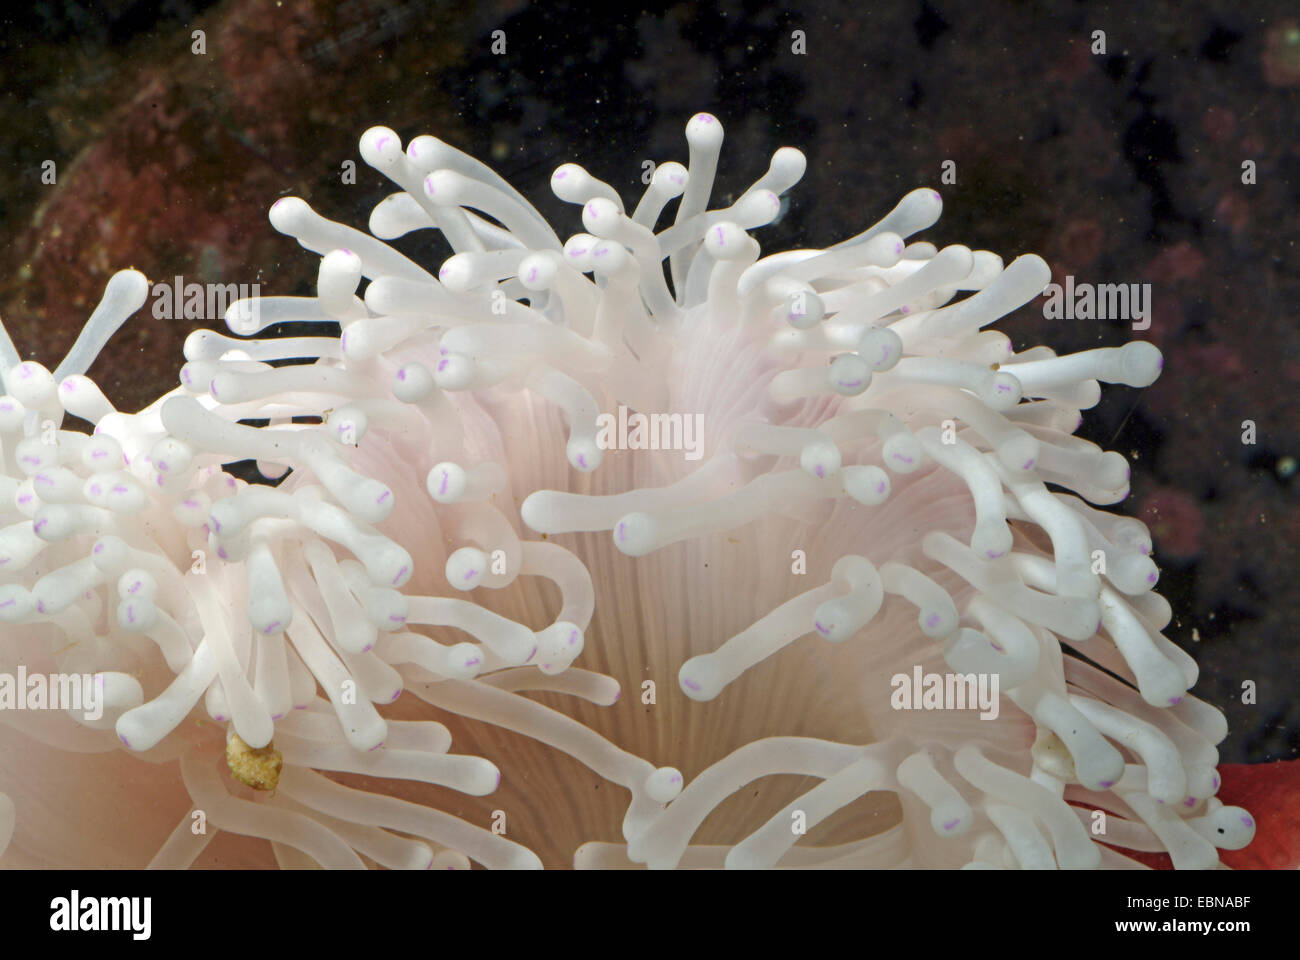 Anémone magnifique, magnifique anémone de mer (Heteractis magnifica), tentacules d'une anémone magnifique Banque D'Images